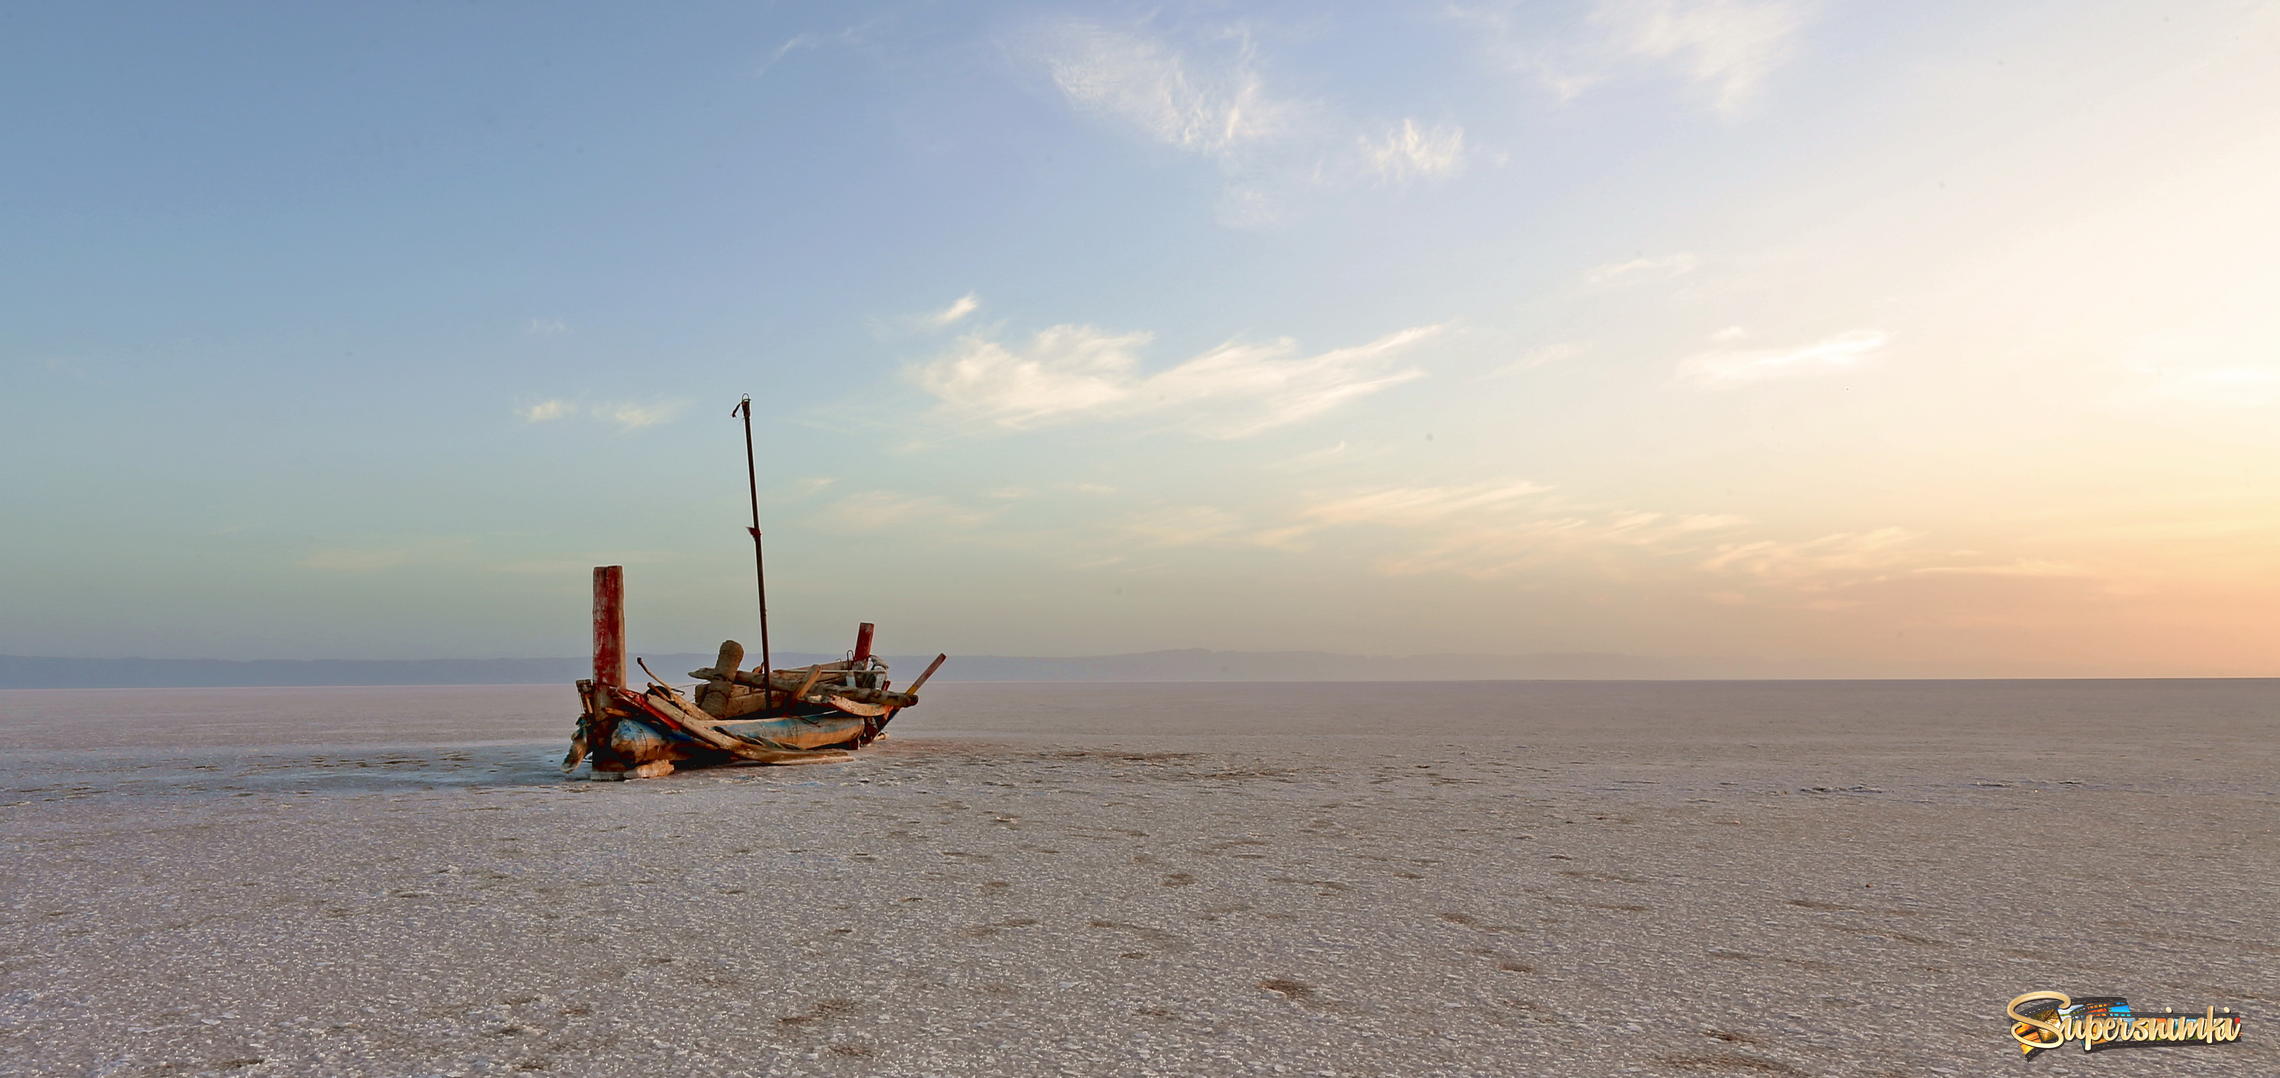 Восход над соляной пустыней Шотт-эль-Джерид 